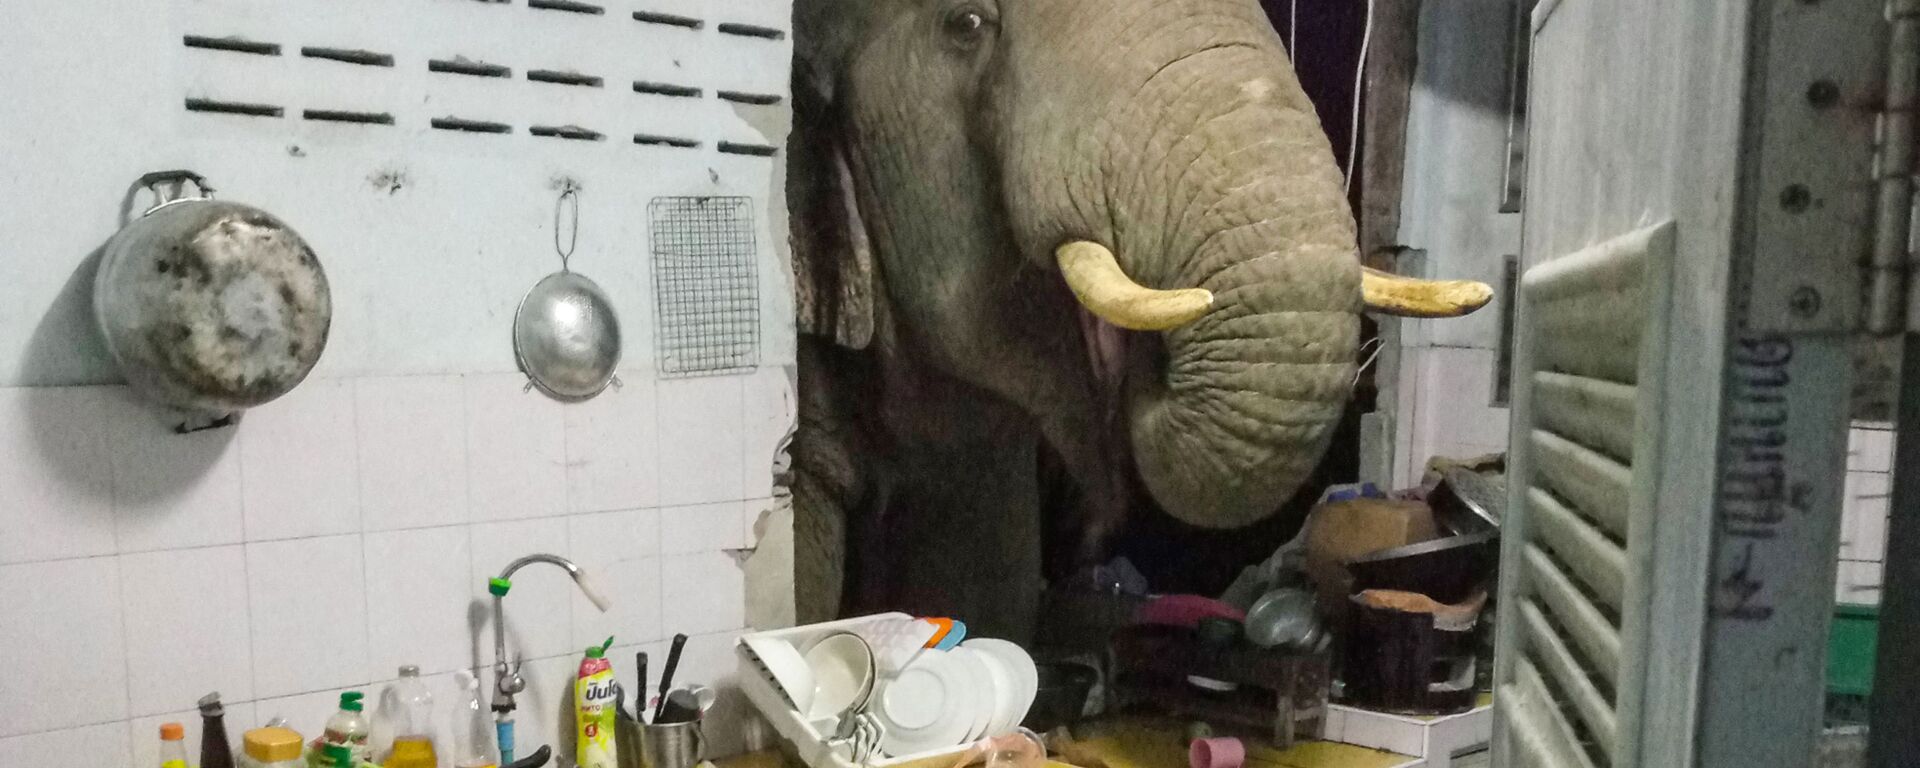 Radchadawan Peungprasopporn'un Facebook hesabında paylaştığı evinin mutfak duvarını yıkan Plai Bunchuay isimli 40 yaşındaki erkek fil - Sputnik Türkiye, 1920, 25.07.2021